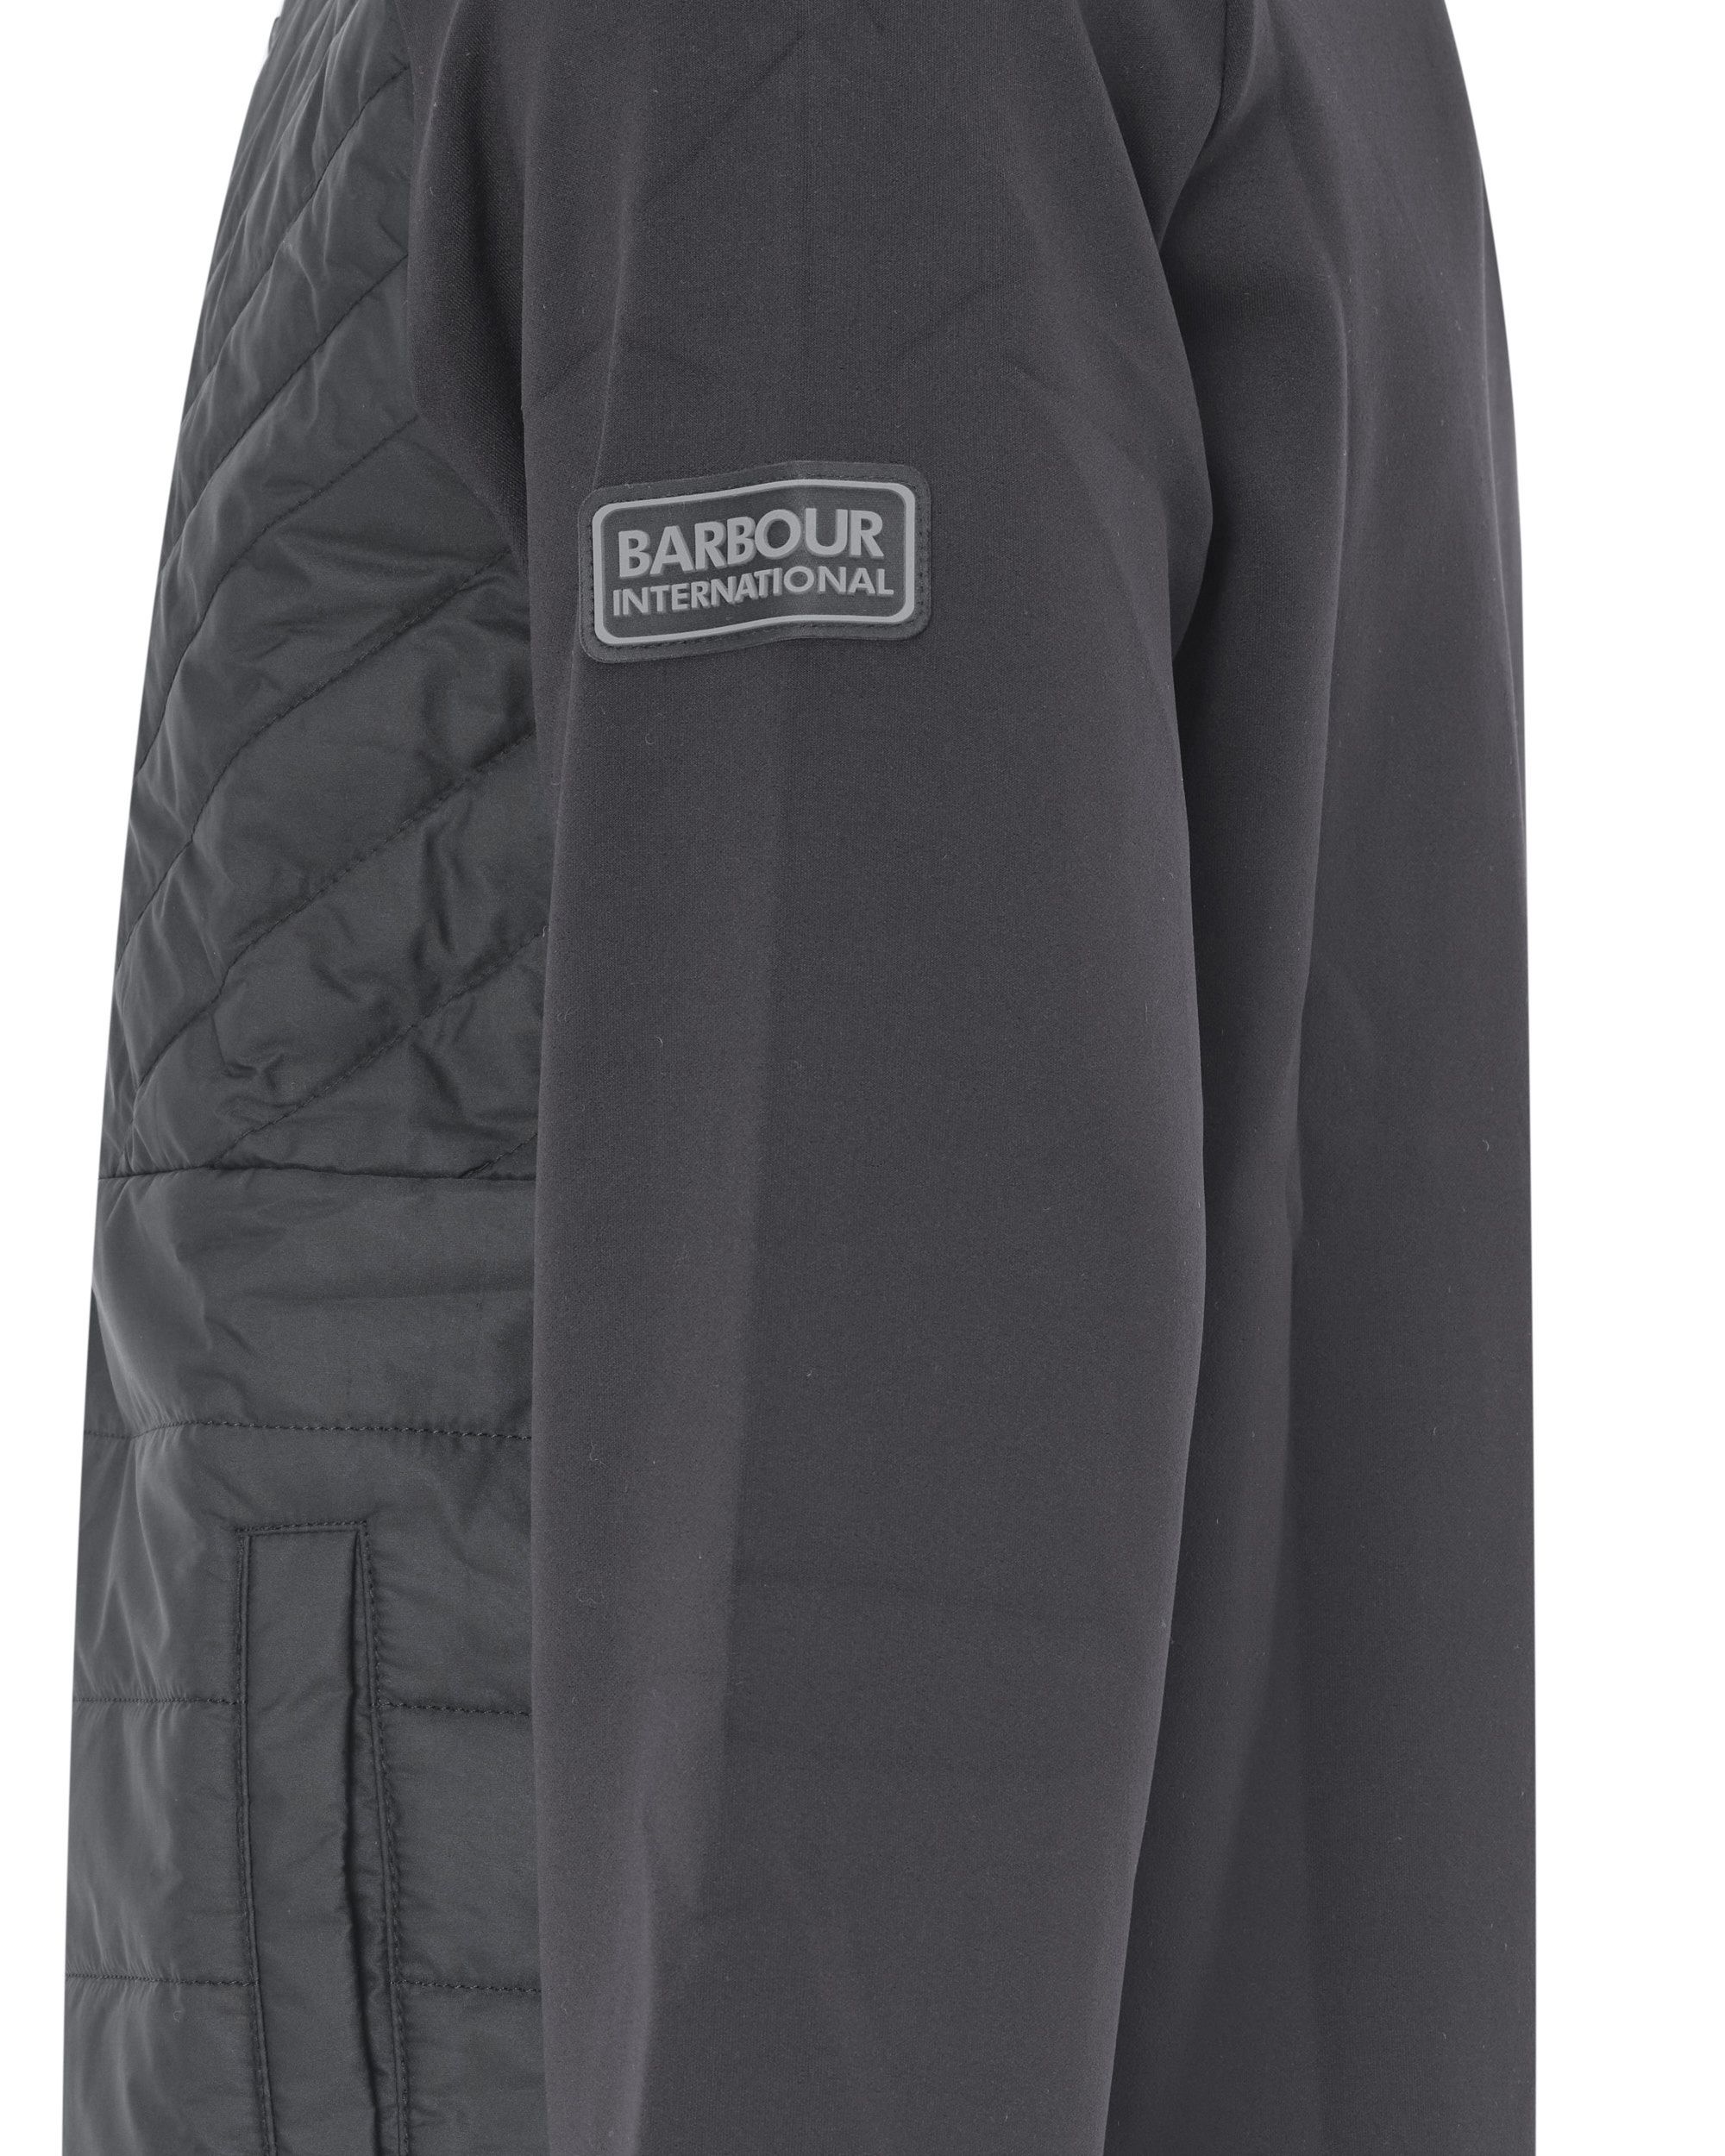 Barbour International Nate Quilted Vest Zwart 078760-001-L